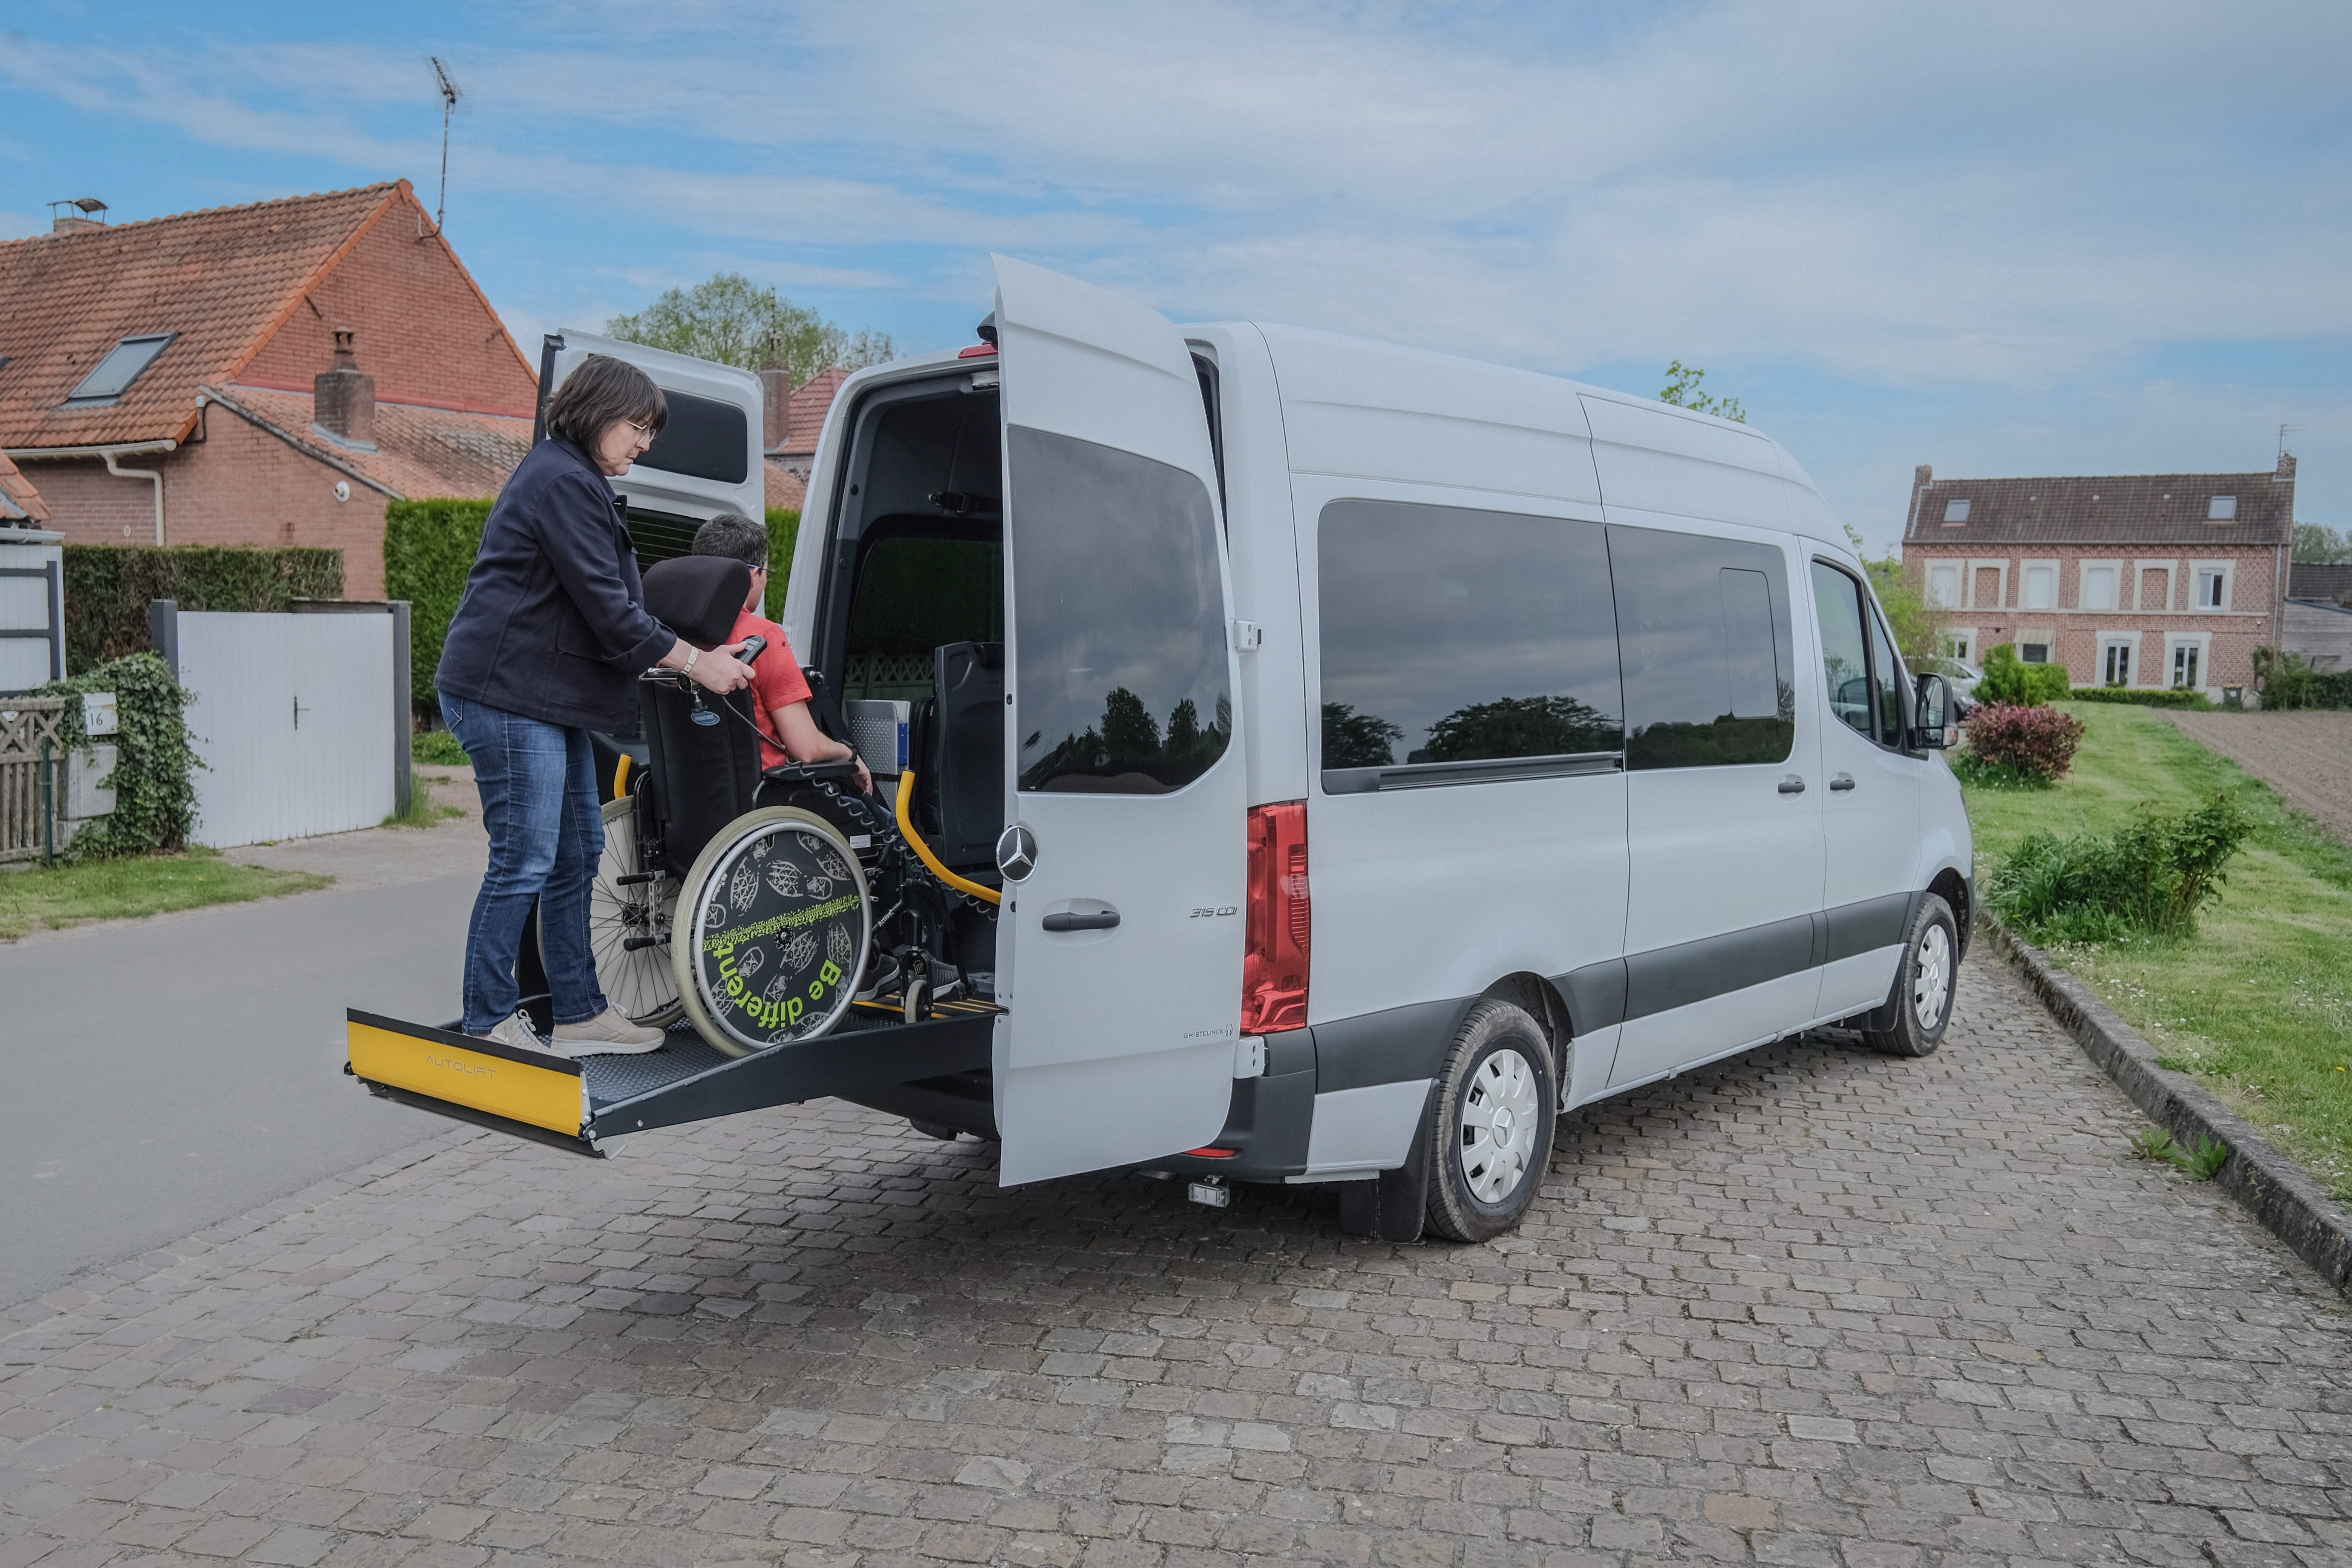 La plateforme élévatrice permet de monter et descendre les passagers en fauteuil roulant plus facilement et en toute sécurité